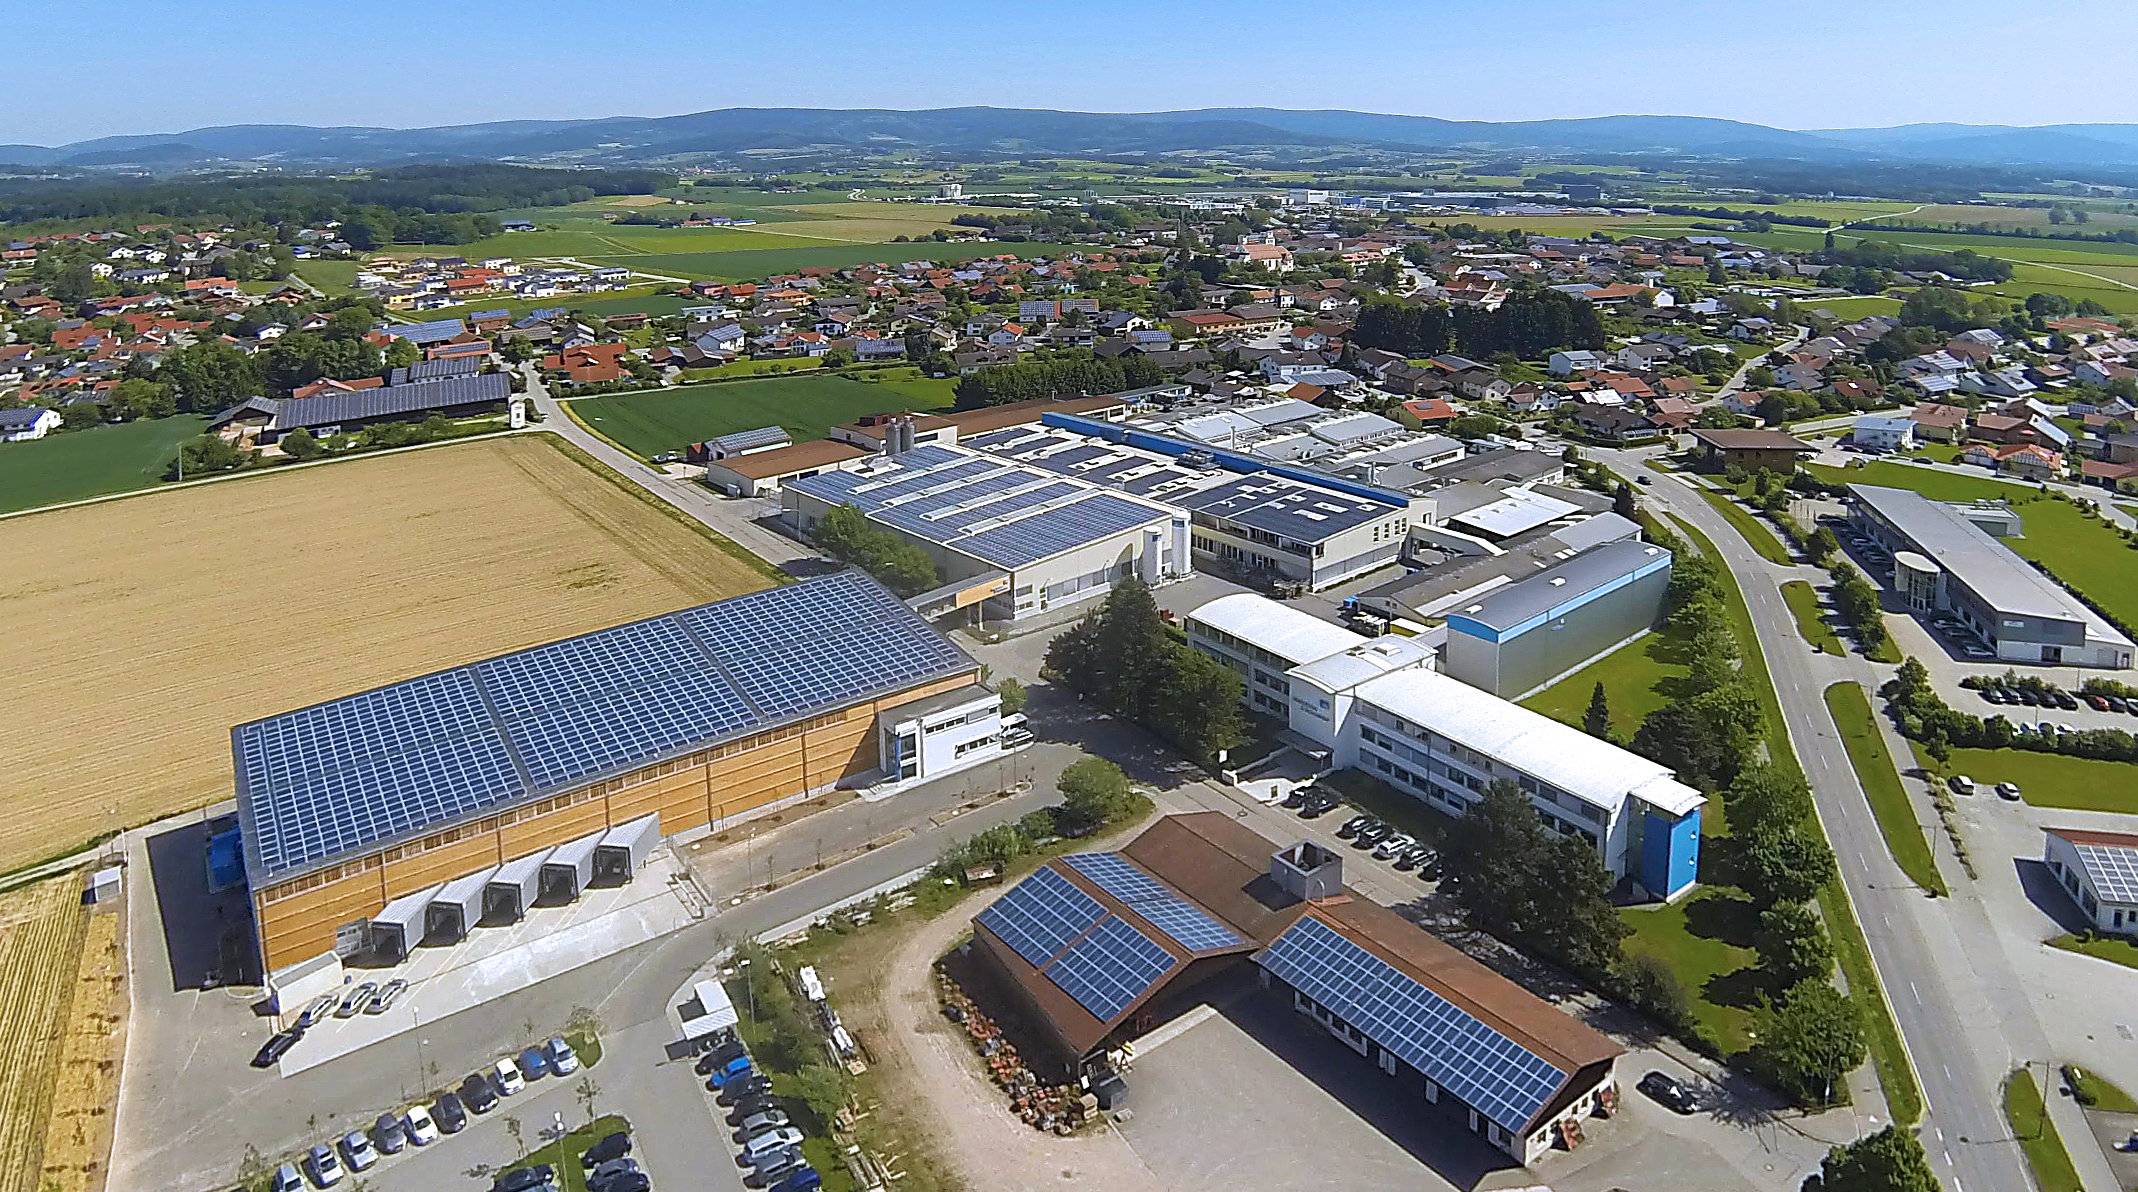 Auf rund 43.500 m2 erstreckt sich das Firmengelände von Wallstabe & Schneider am Ortsrand von Niederwinkling. Dazu gehören 11 Produktionshallen, ein Logistikzentrum, ein Verwaltungsgebäude sowie die Firmenparkplätze.